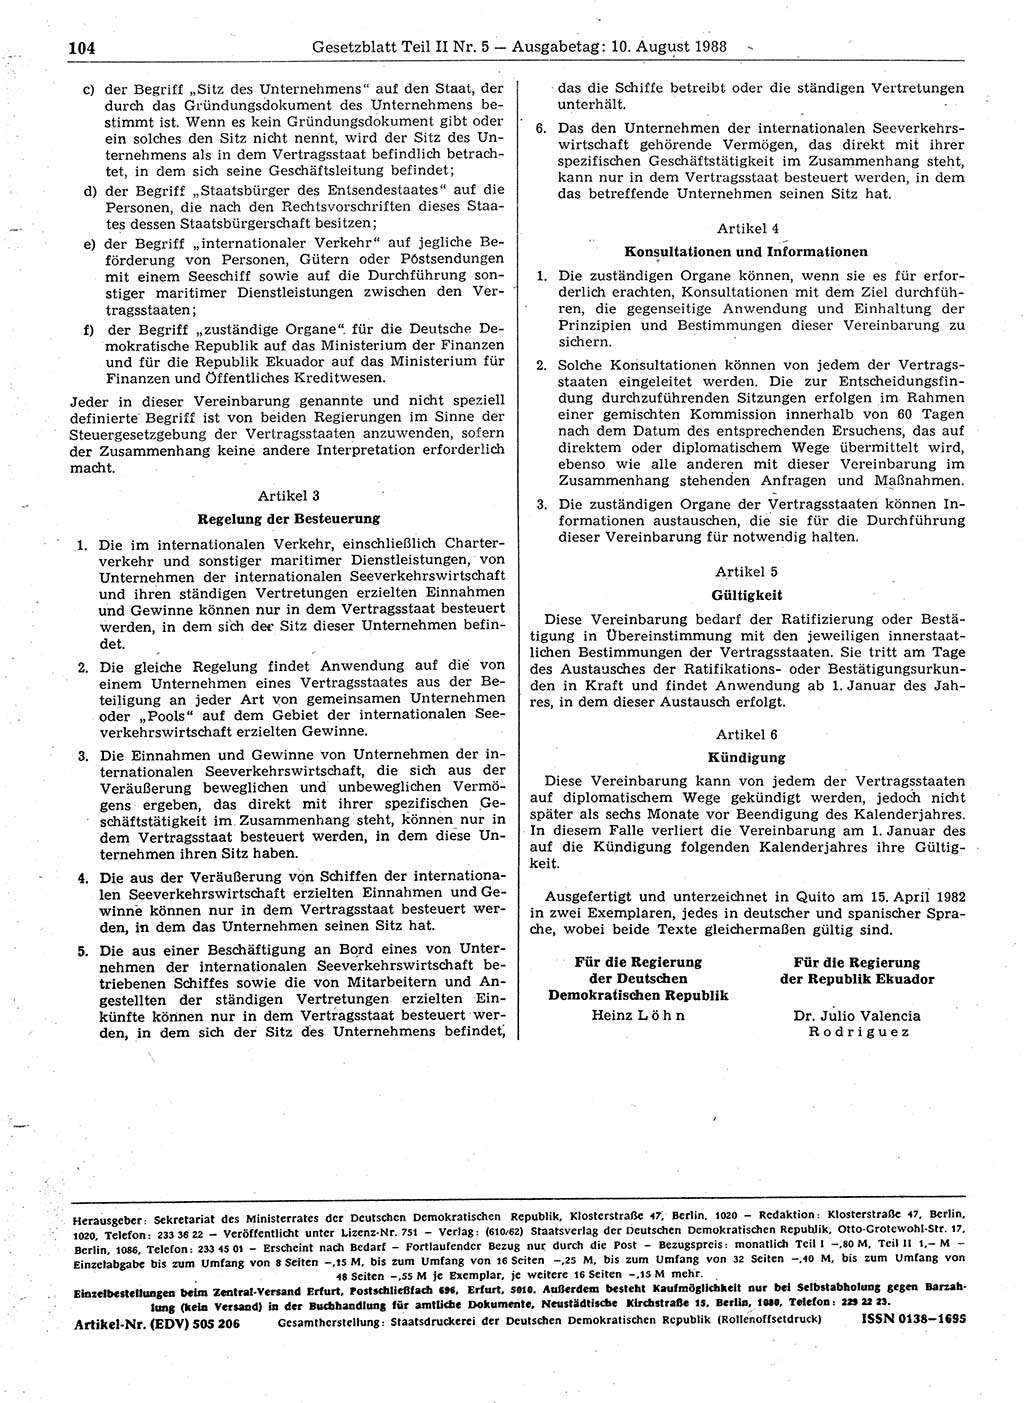 Gesetzblatt (GBl.) der Deutschen Demokratischen Republik (DDR) Teil ⅠⅠ 1988, Seite 104 (GBl. DDR ⅠⅠ 1988, S. 104)